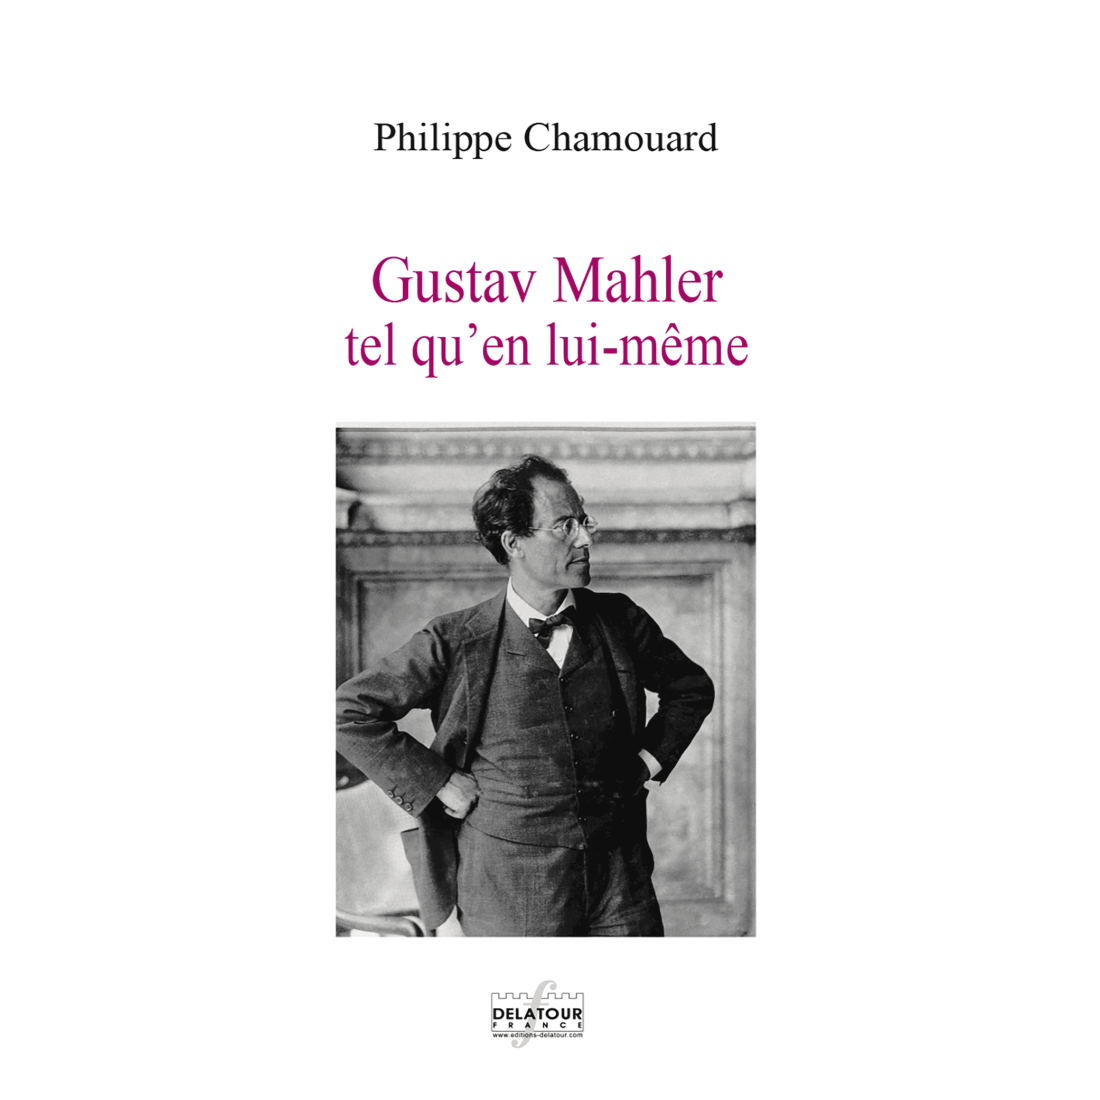 Gustav Mahler tel qu'en lui-même